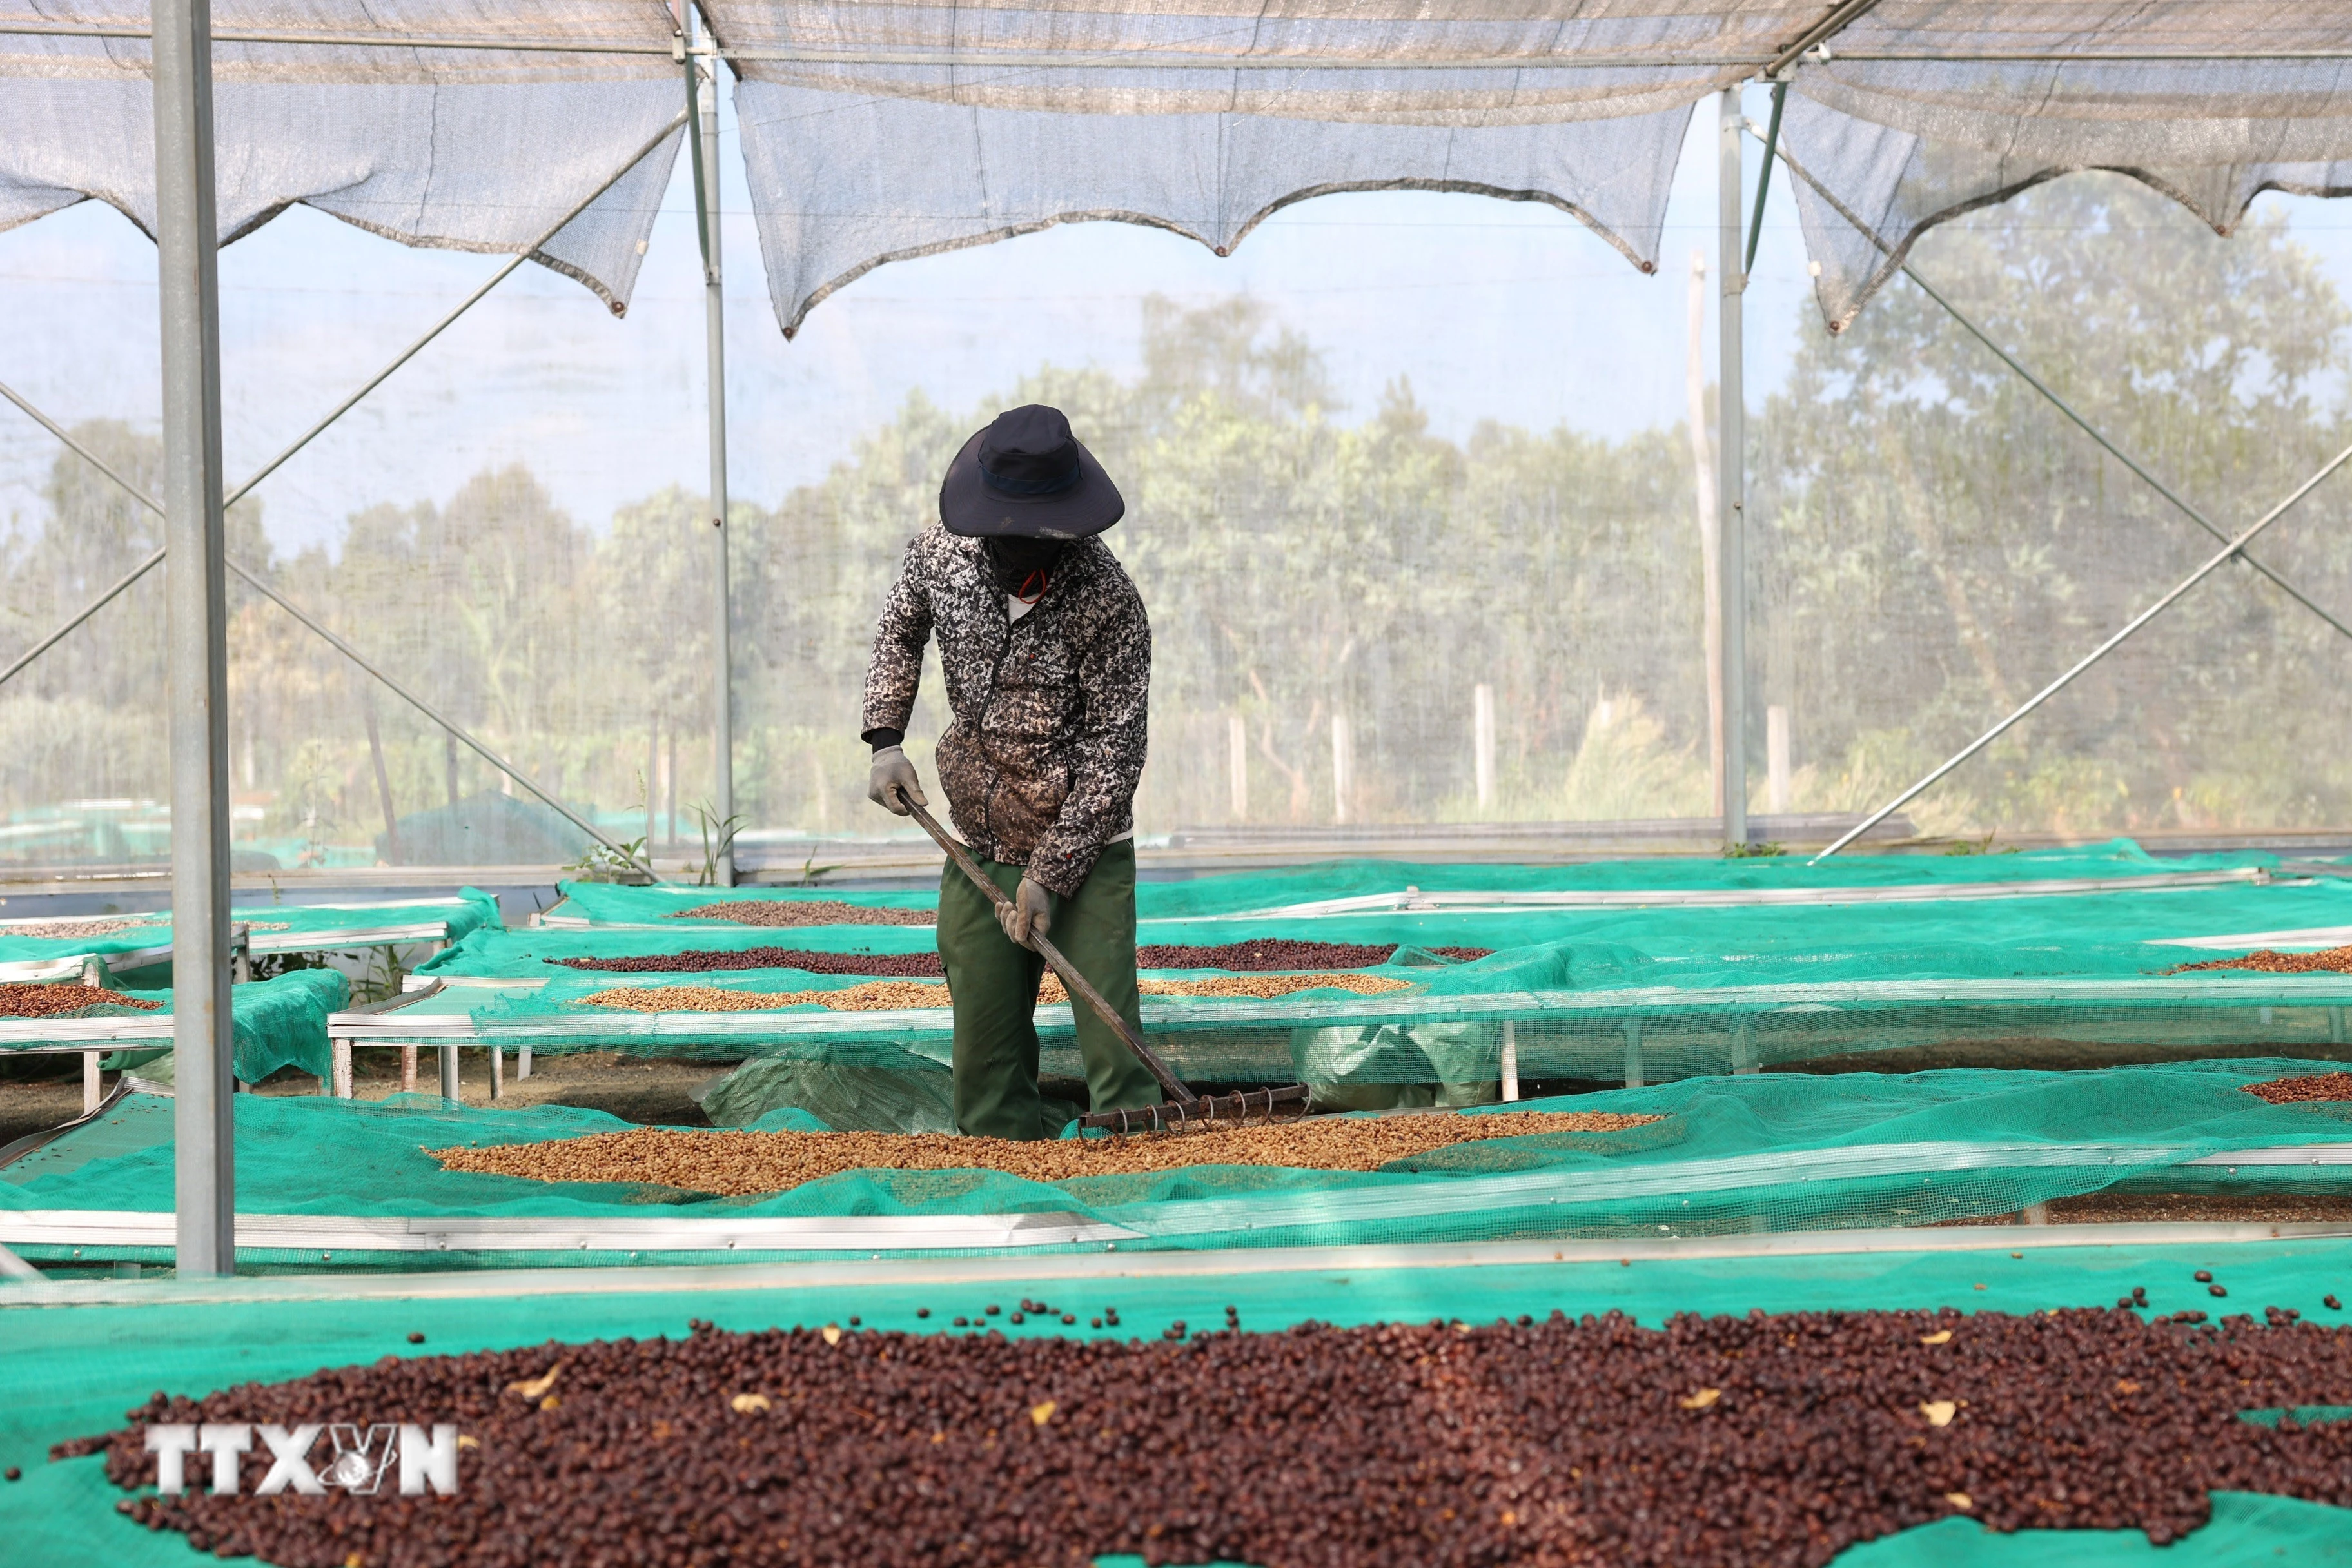 Càphê đặc sản được phơi trong nhà lưới theo quy trình nghiêm ngặt tại trang trại Aeroco Coffee để đảm bảo chất lượng. (Ảnh: Tuấn Anh/TTXVN)